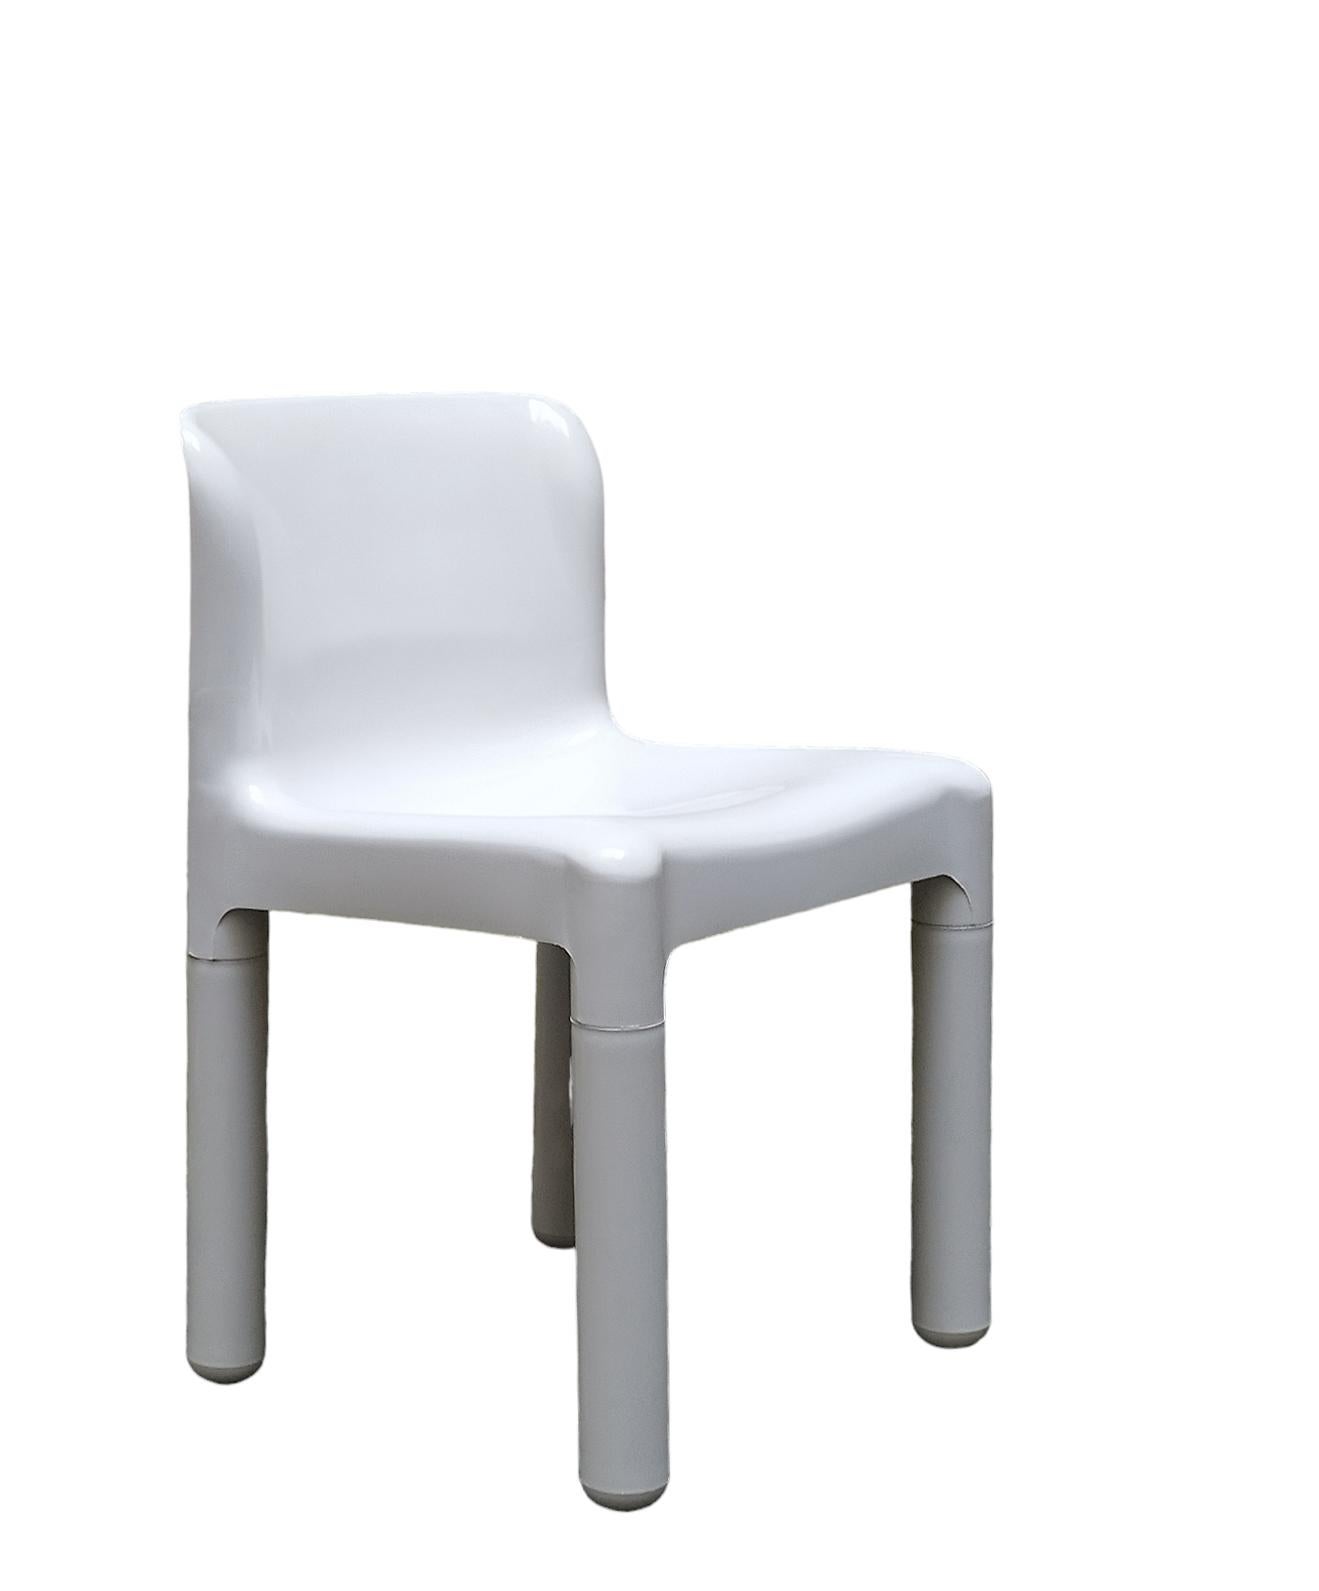 Chaise moderne italienne en plastique blanc avec assise et dossier arrondis, Mod.